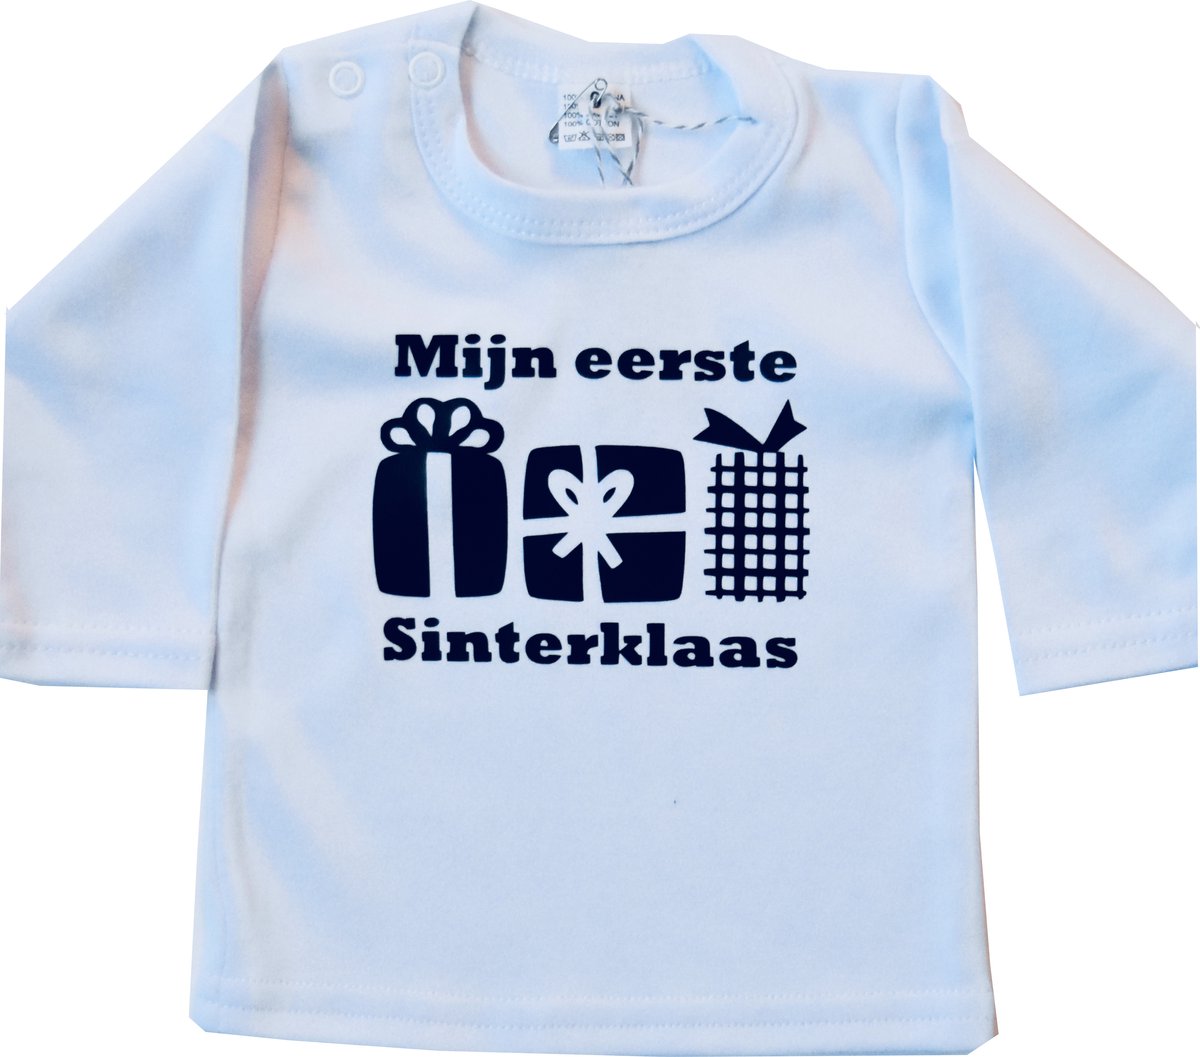 Stijlie Kids Mijn eerste Sinterklaas shirtje wit maat 62